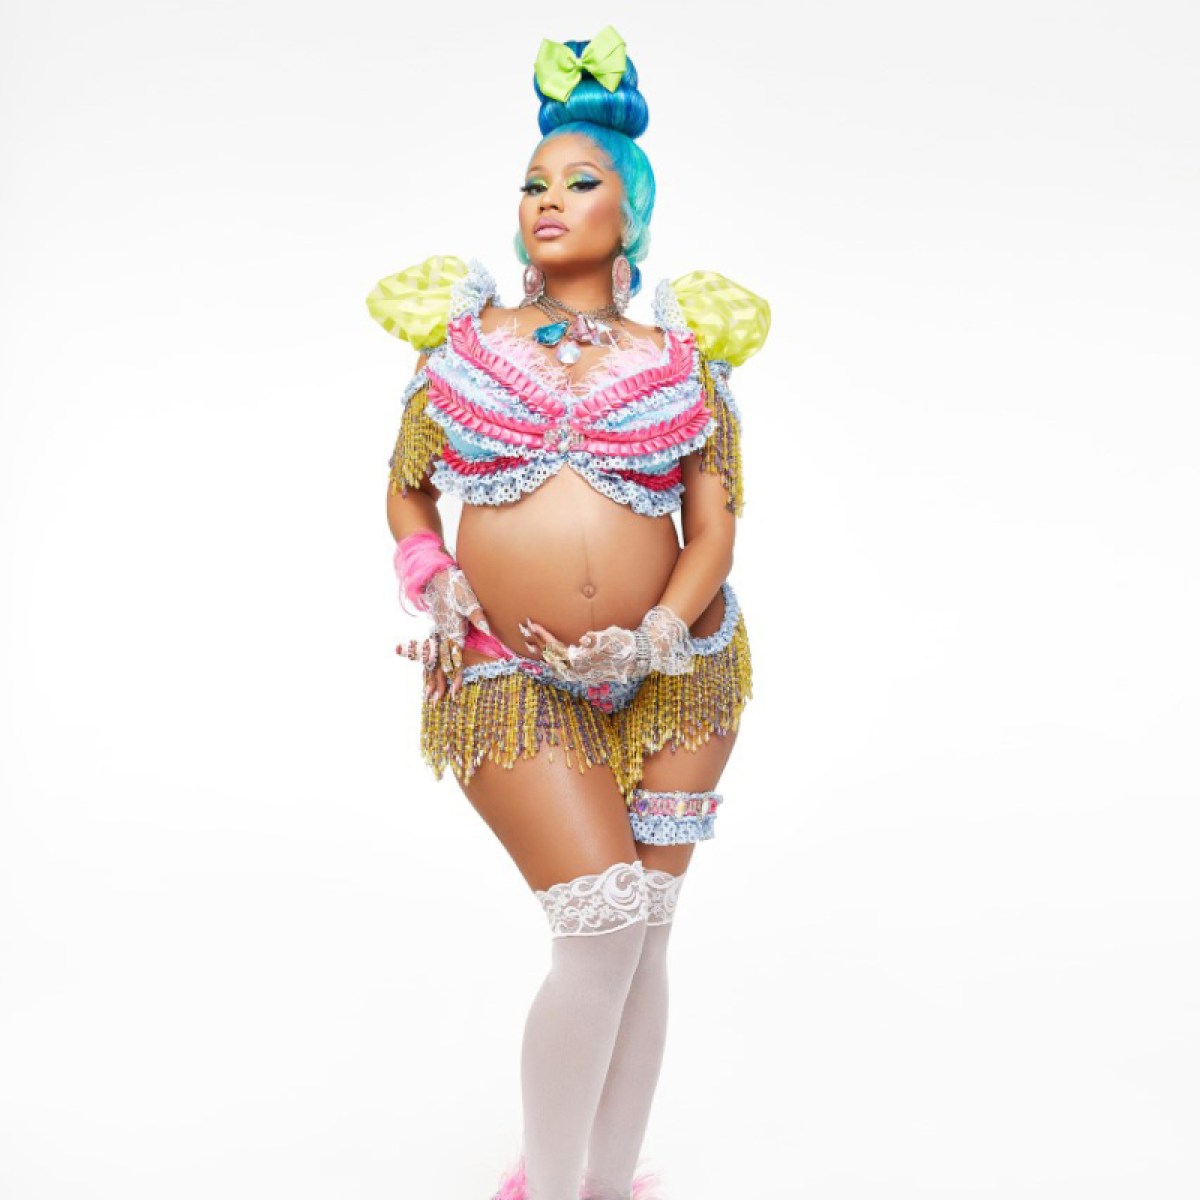 Nicki Minaj Free Porn - Pregnant Nicki Minaj's Baby Bump: See Photos So Far